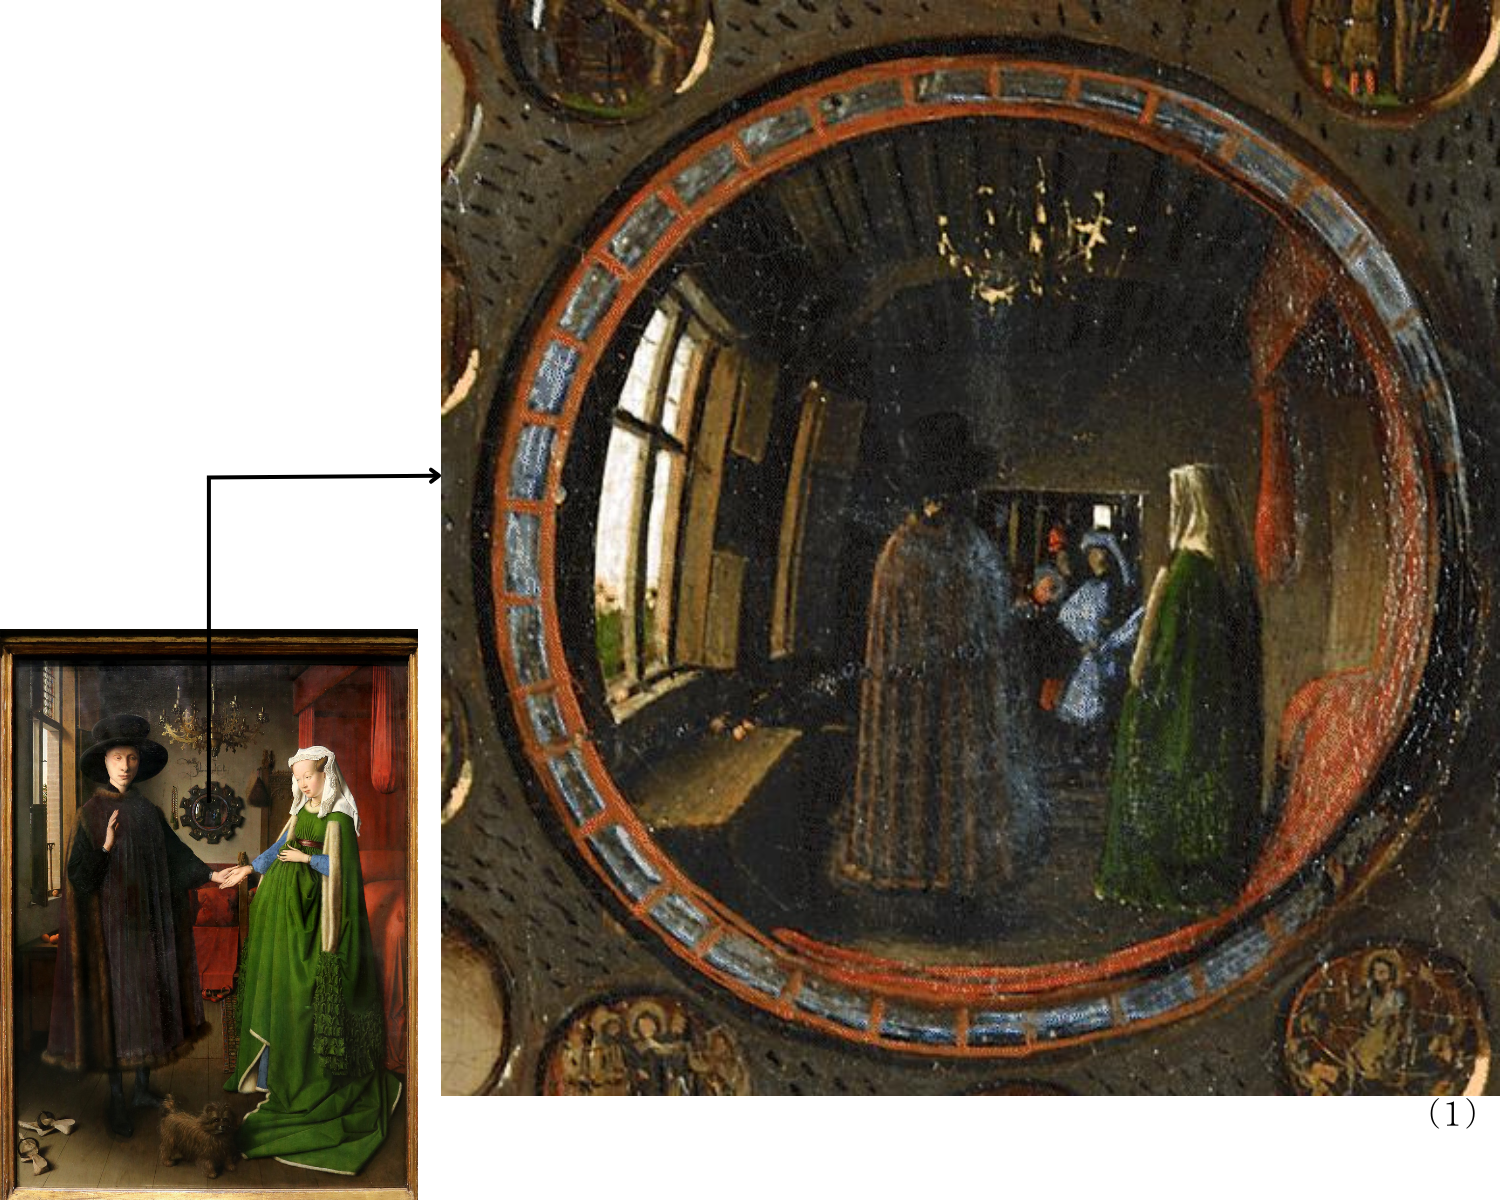 〈アルノルフィーニ夫妻の肖像〉（1）夫妻の後ろ姿と画面にはない扉を映し出している凸面鏡